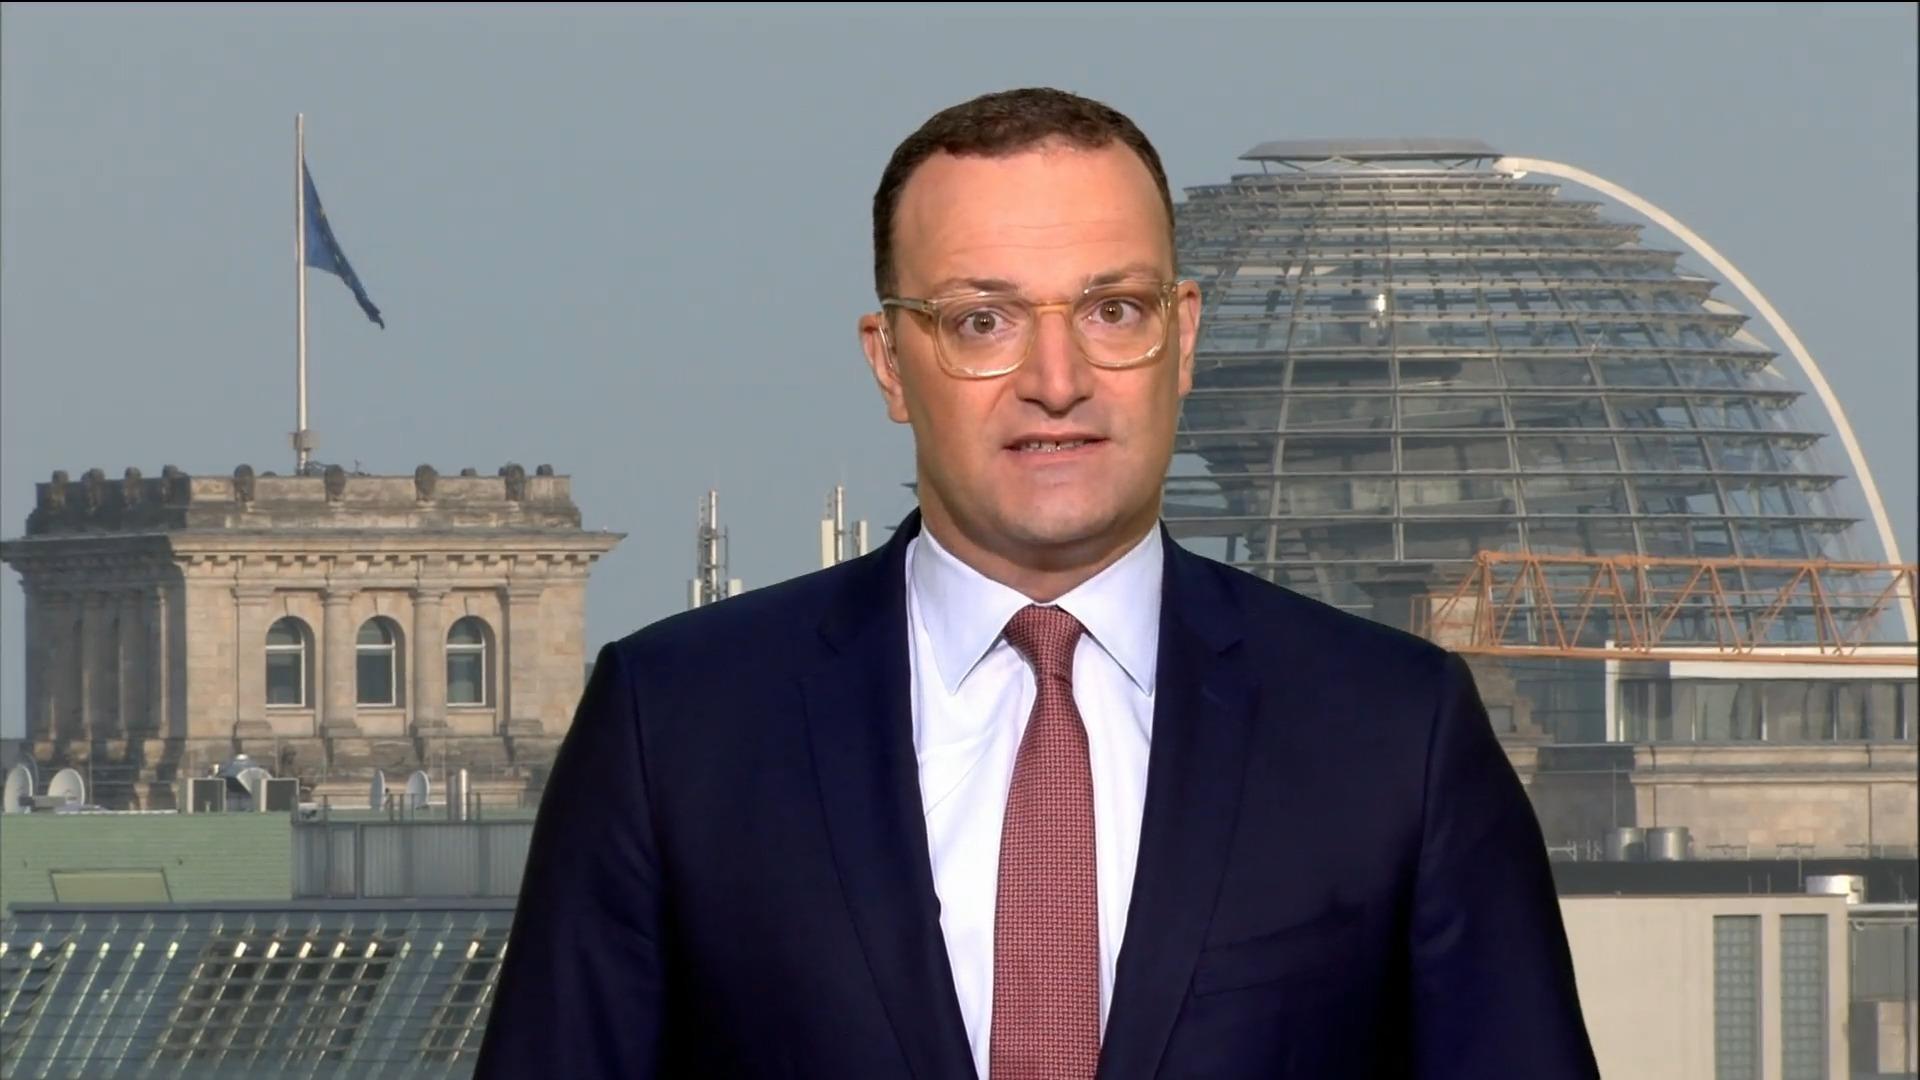 "Zynisch! Beim Belasten ist Regierung sich schnell einig" Jens Spahn im RTL/ntv-Interview zu Gasumlage